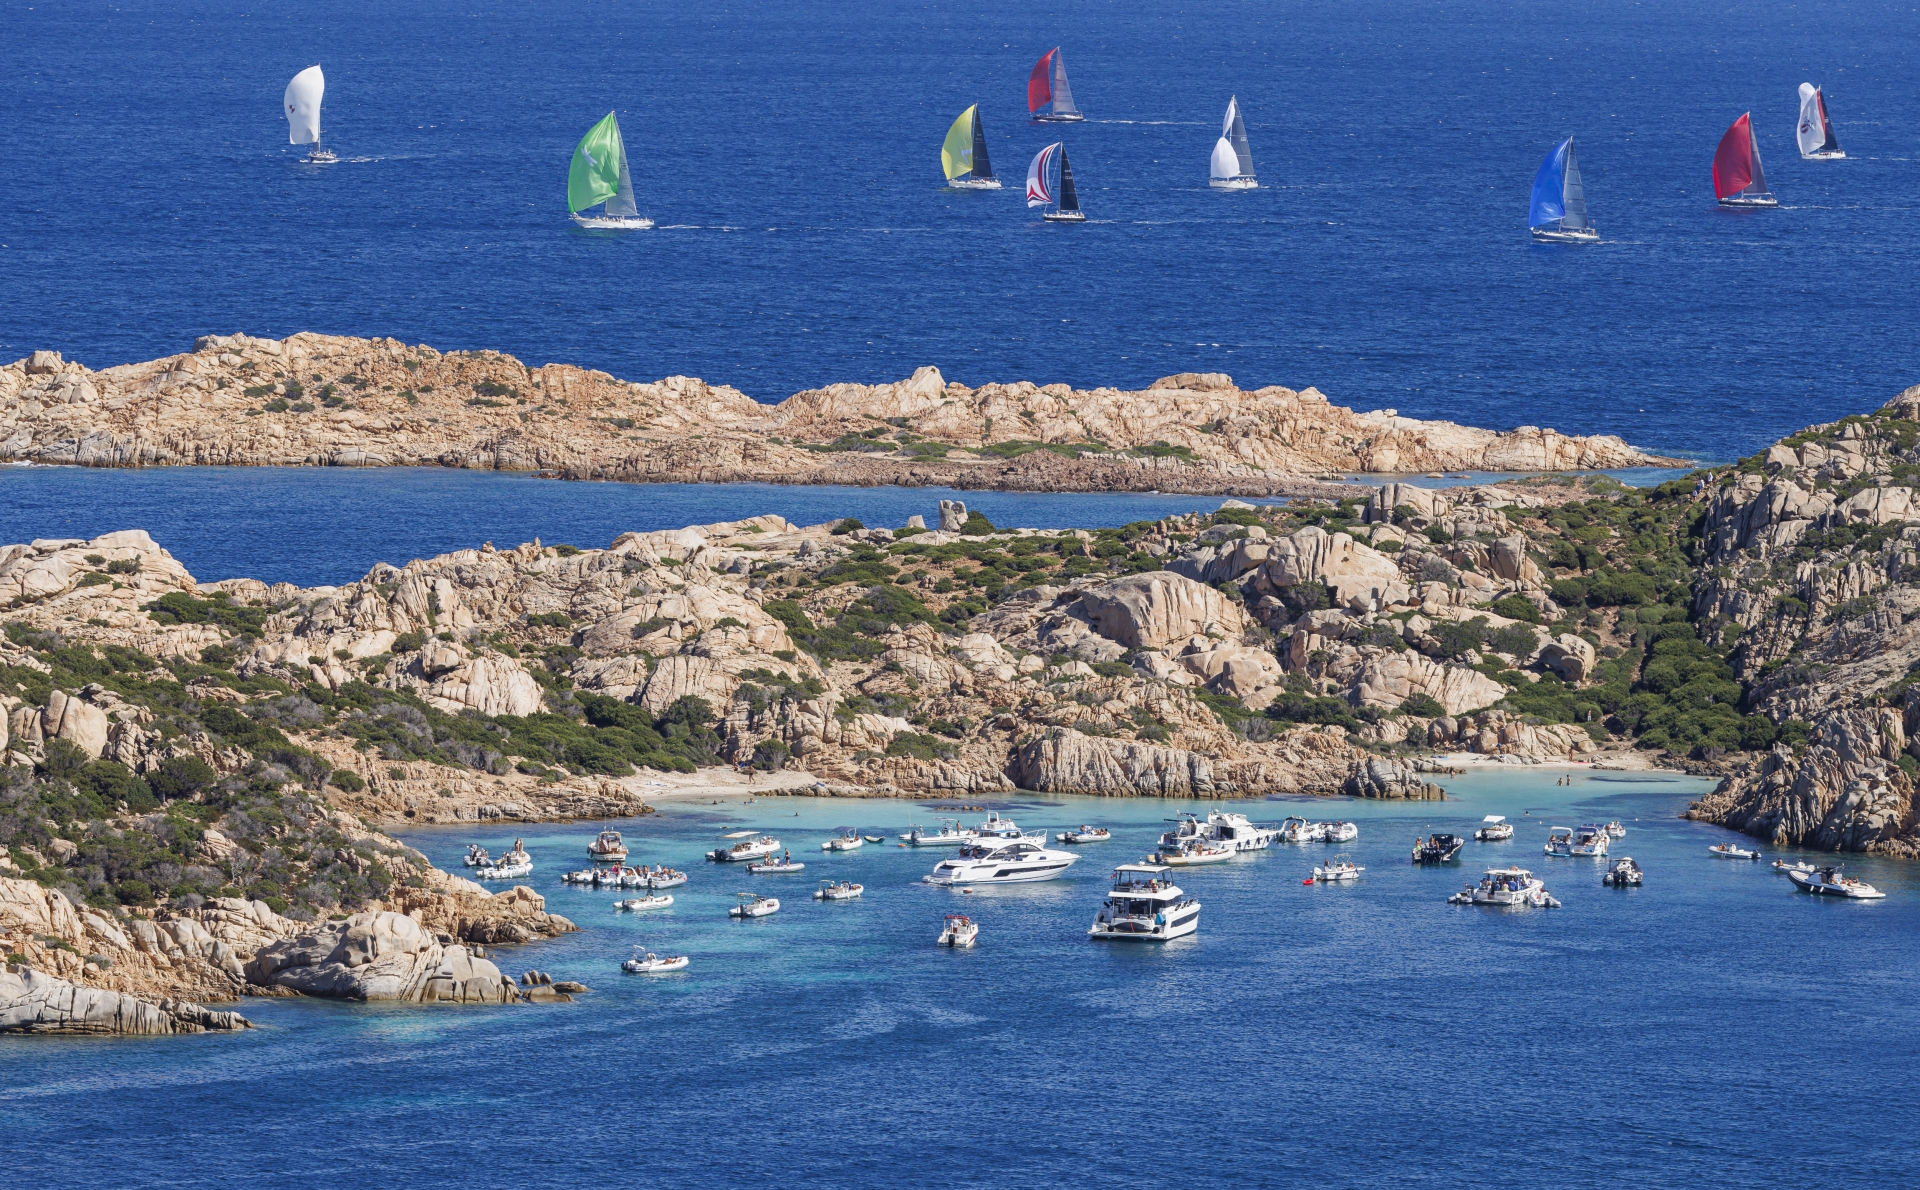 La Rolex Swan Cup si conclude con un’altra giornata di grande vela - News - Yacht Club Costa Smeralda